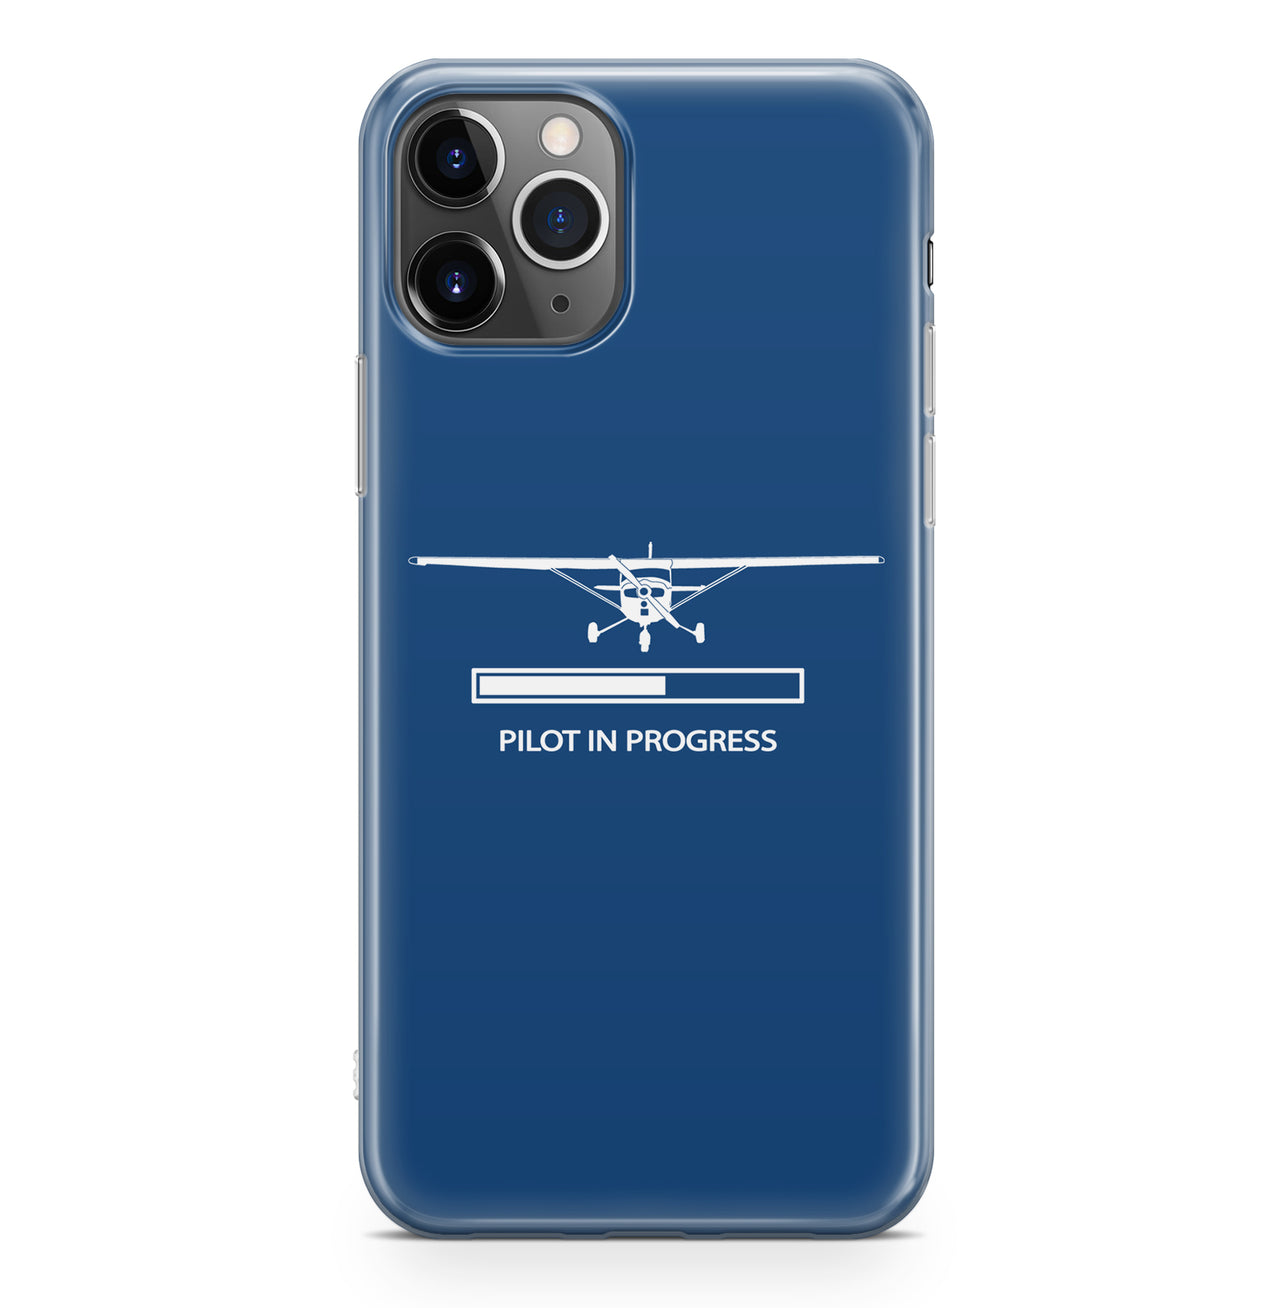 Pilot In Progress (Cessna) Designed iPhone Cases